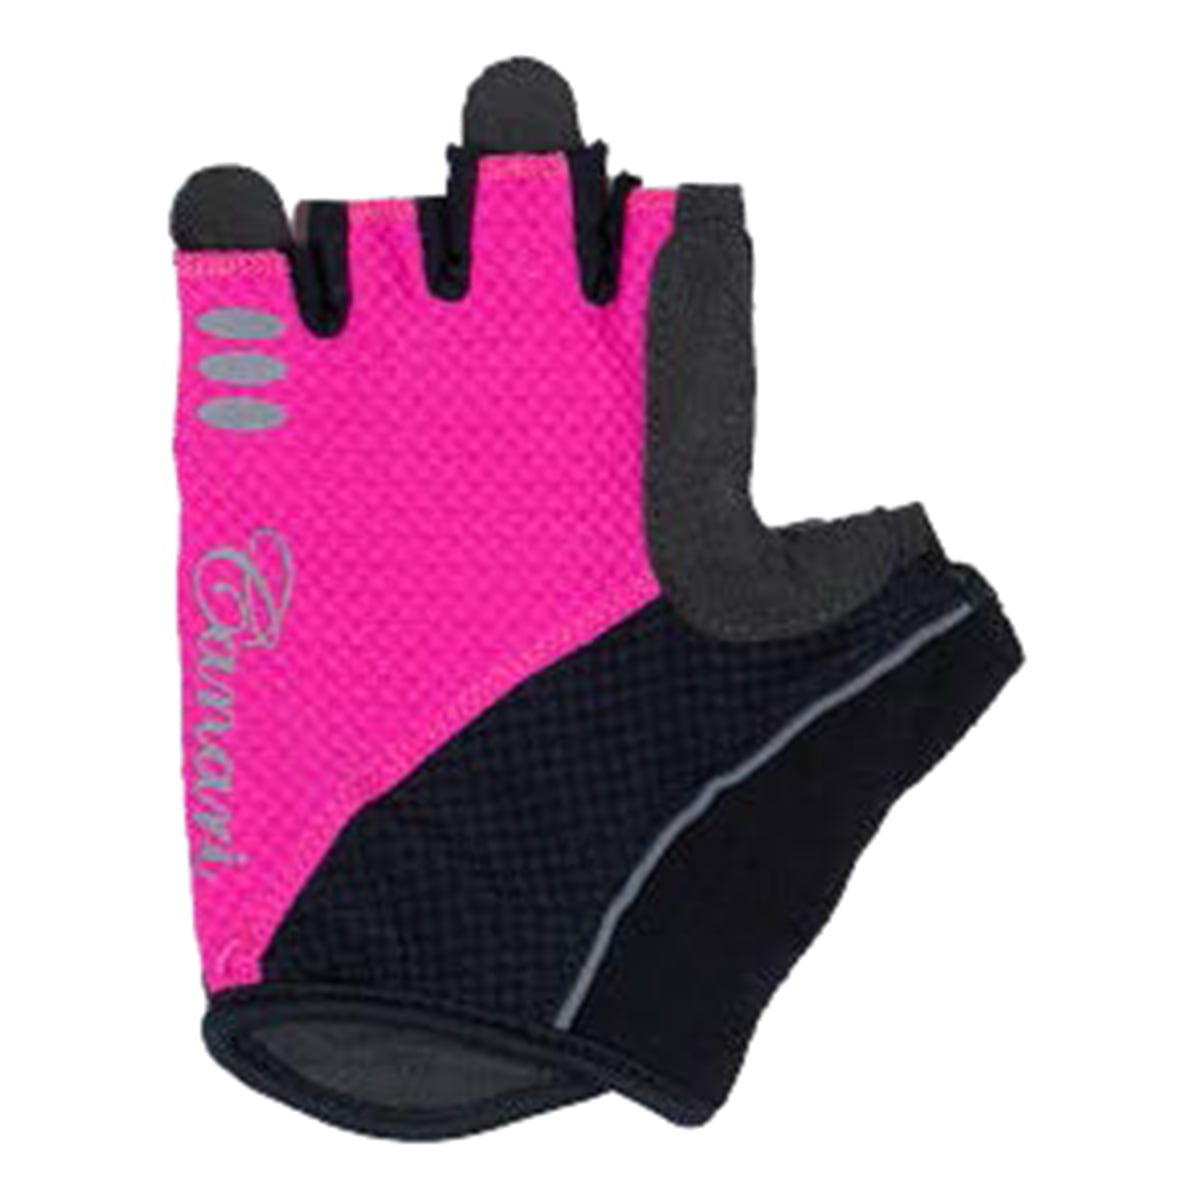 canari cycling gloves